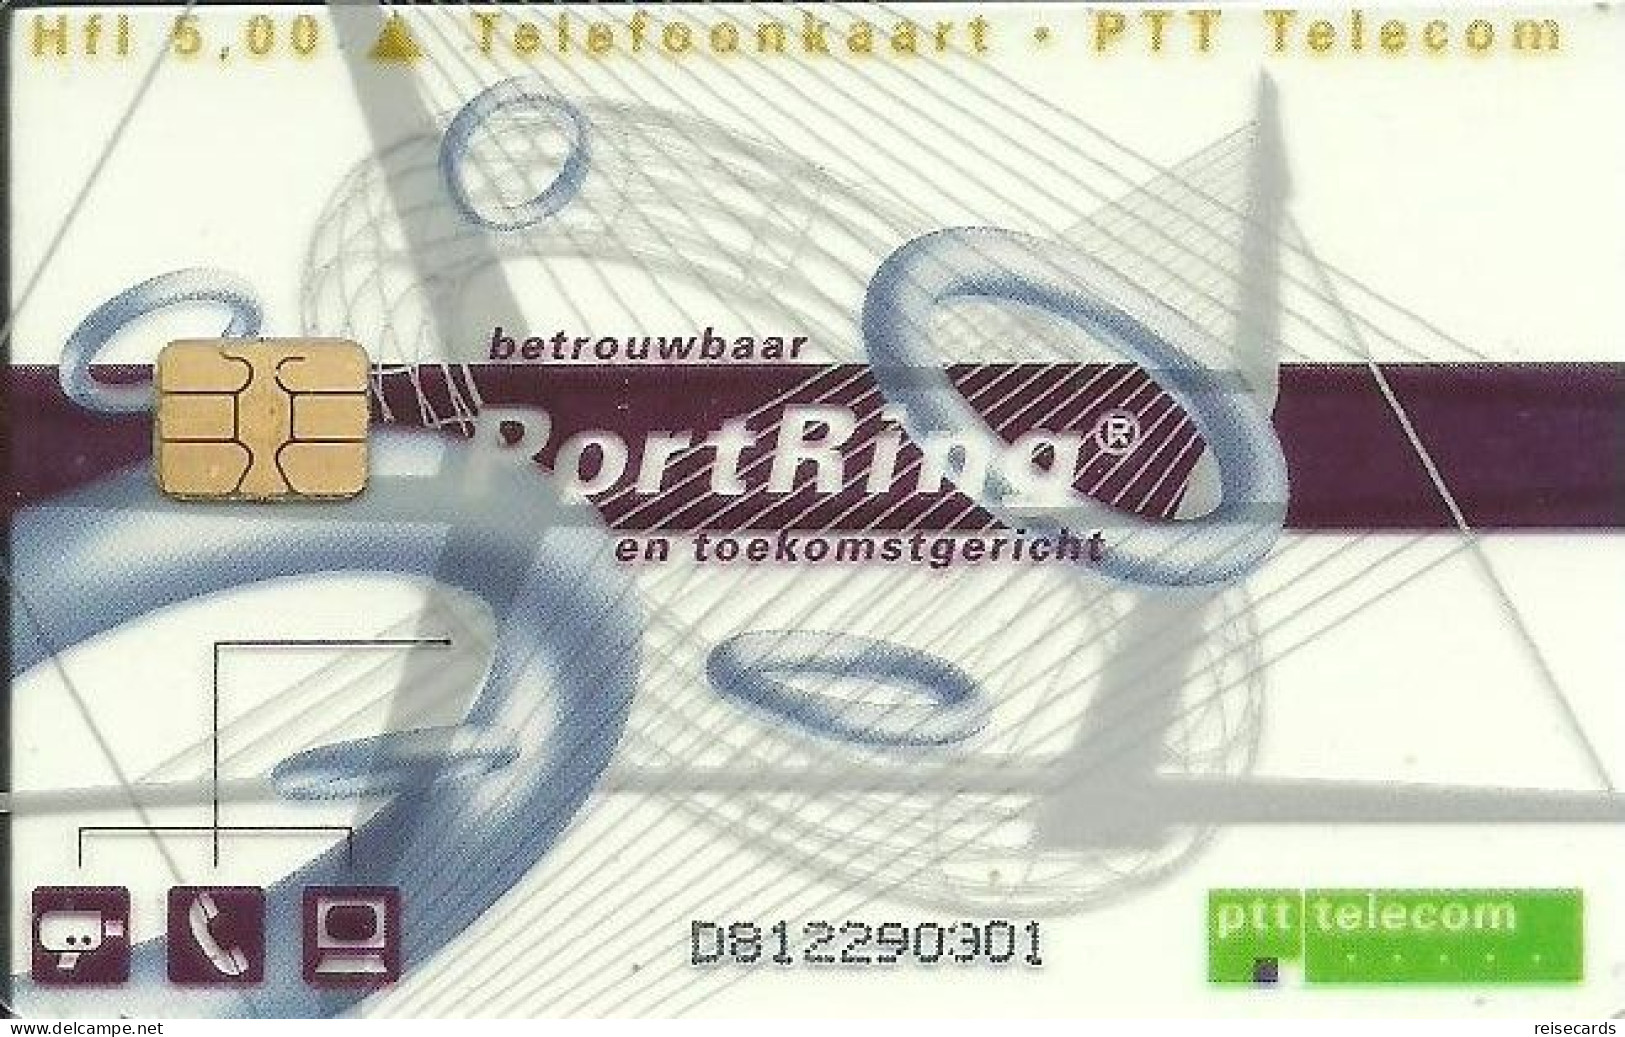 Netherlands: Ptt Telecom - 1997 PortRing. Mint, Transparent - öffentlich